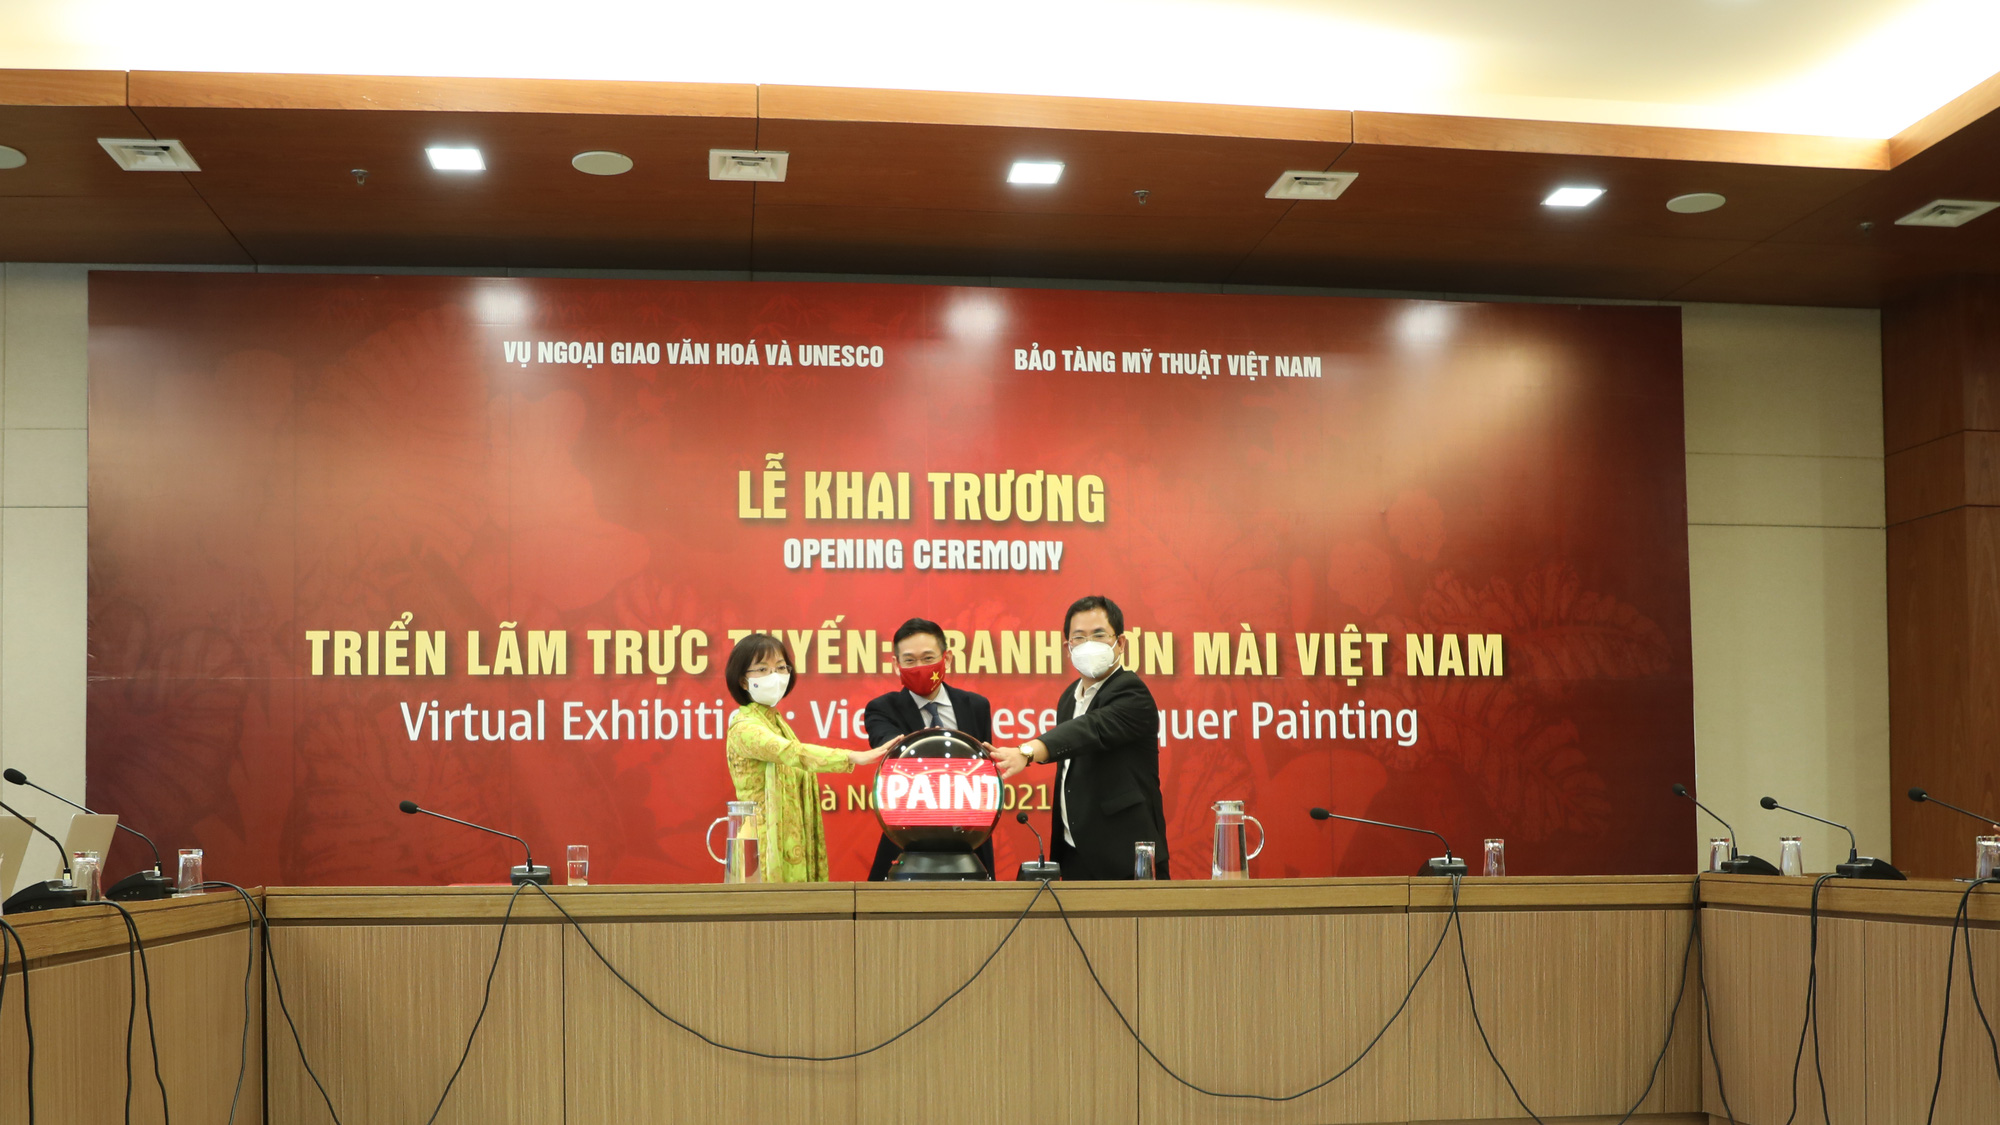 Triển lãm trực tuyến tranh sơn mài Việt Nam: Đưa nghệ thuật Việt vươn ra thế giới - Ảnh 2.